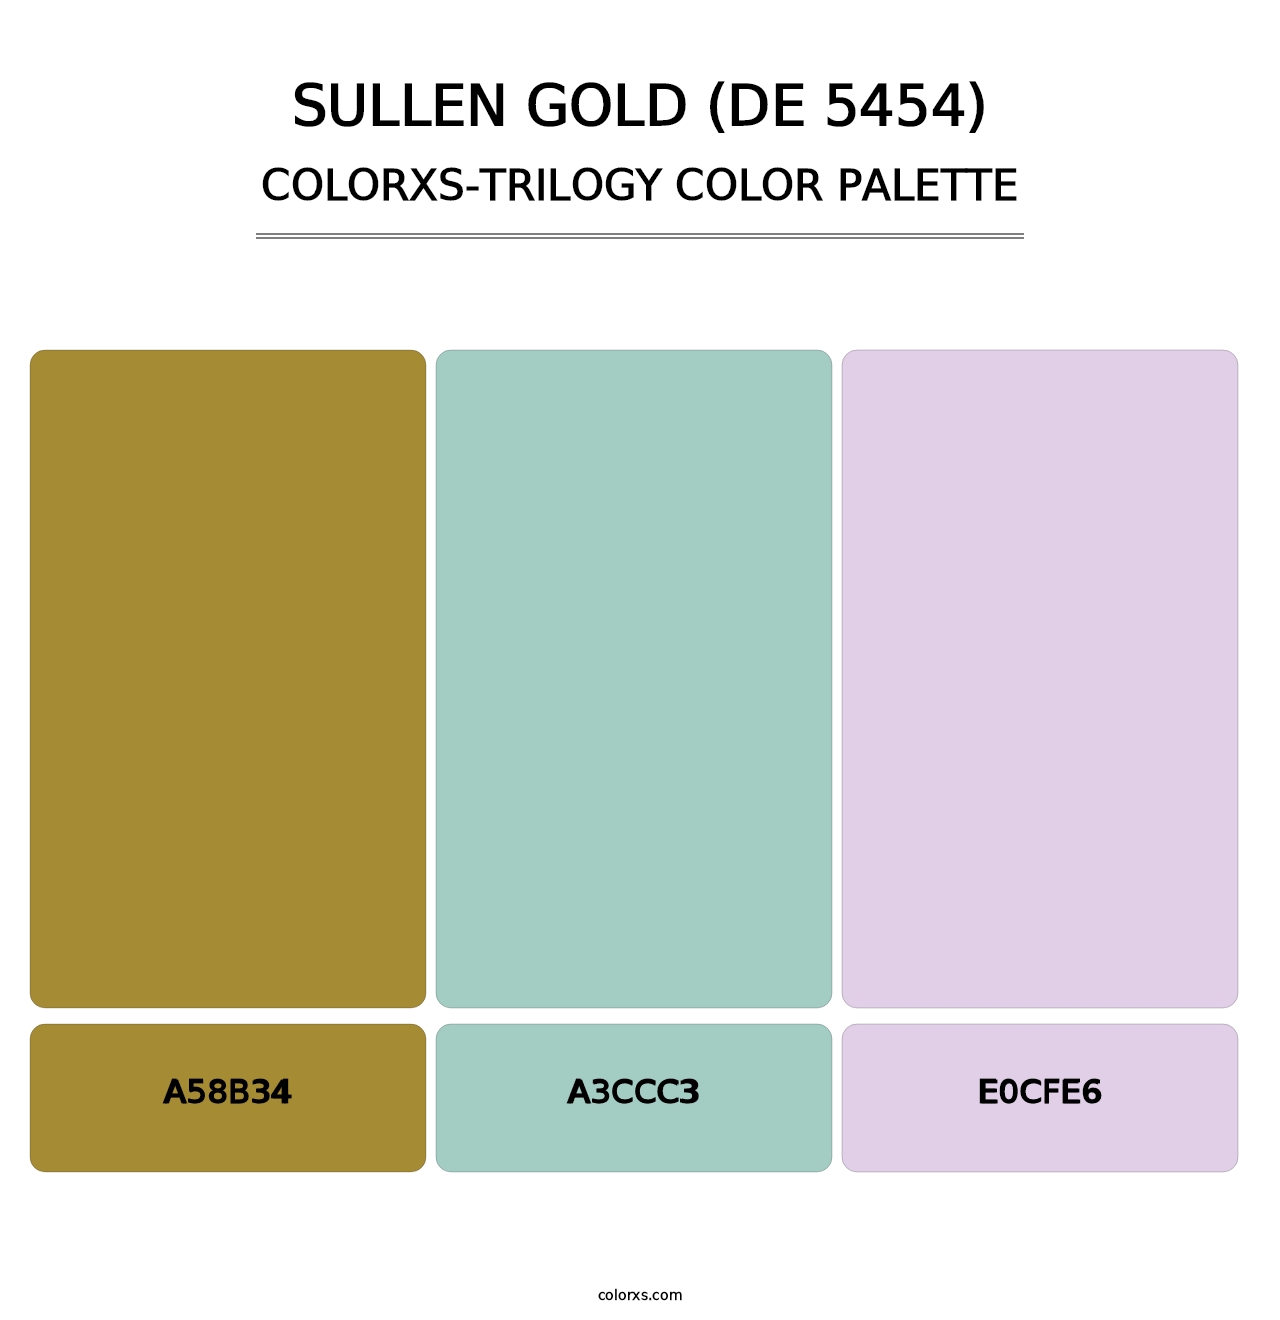 Sullen Gold (DE 5454) - Colorxs Trilogy Palette